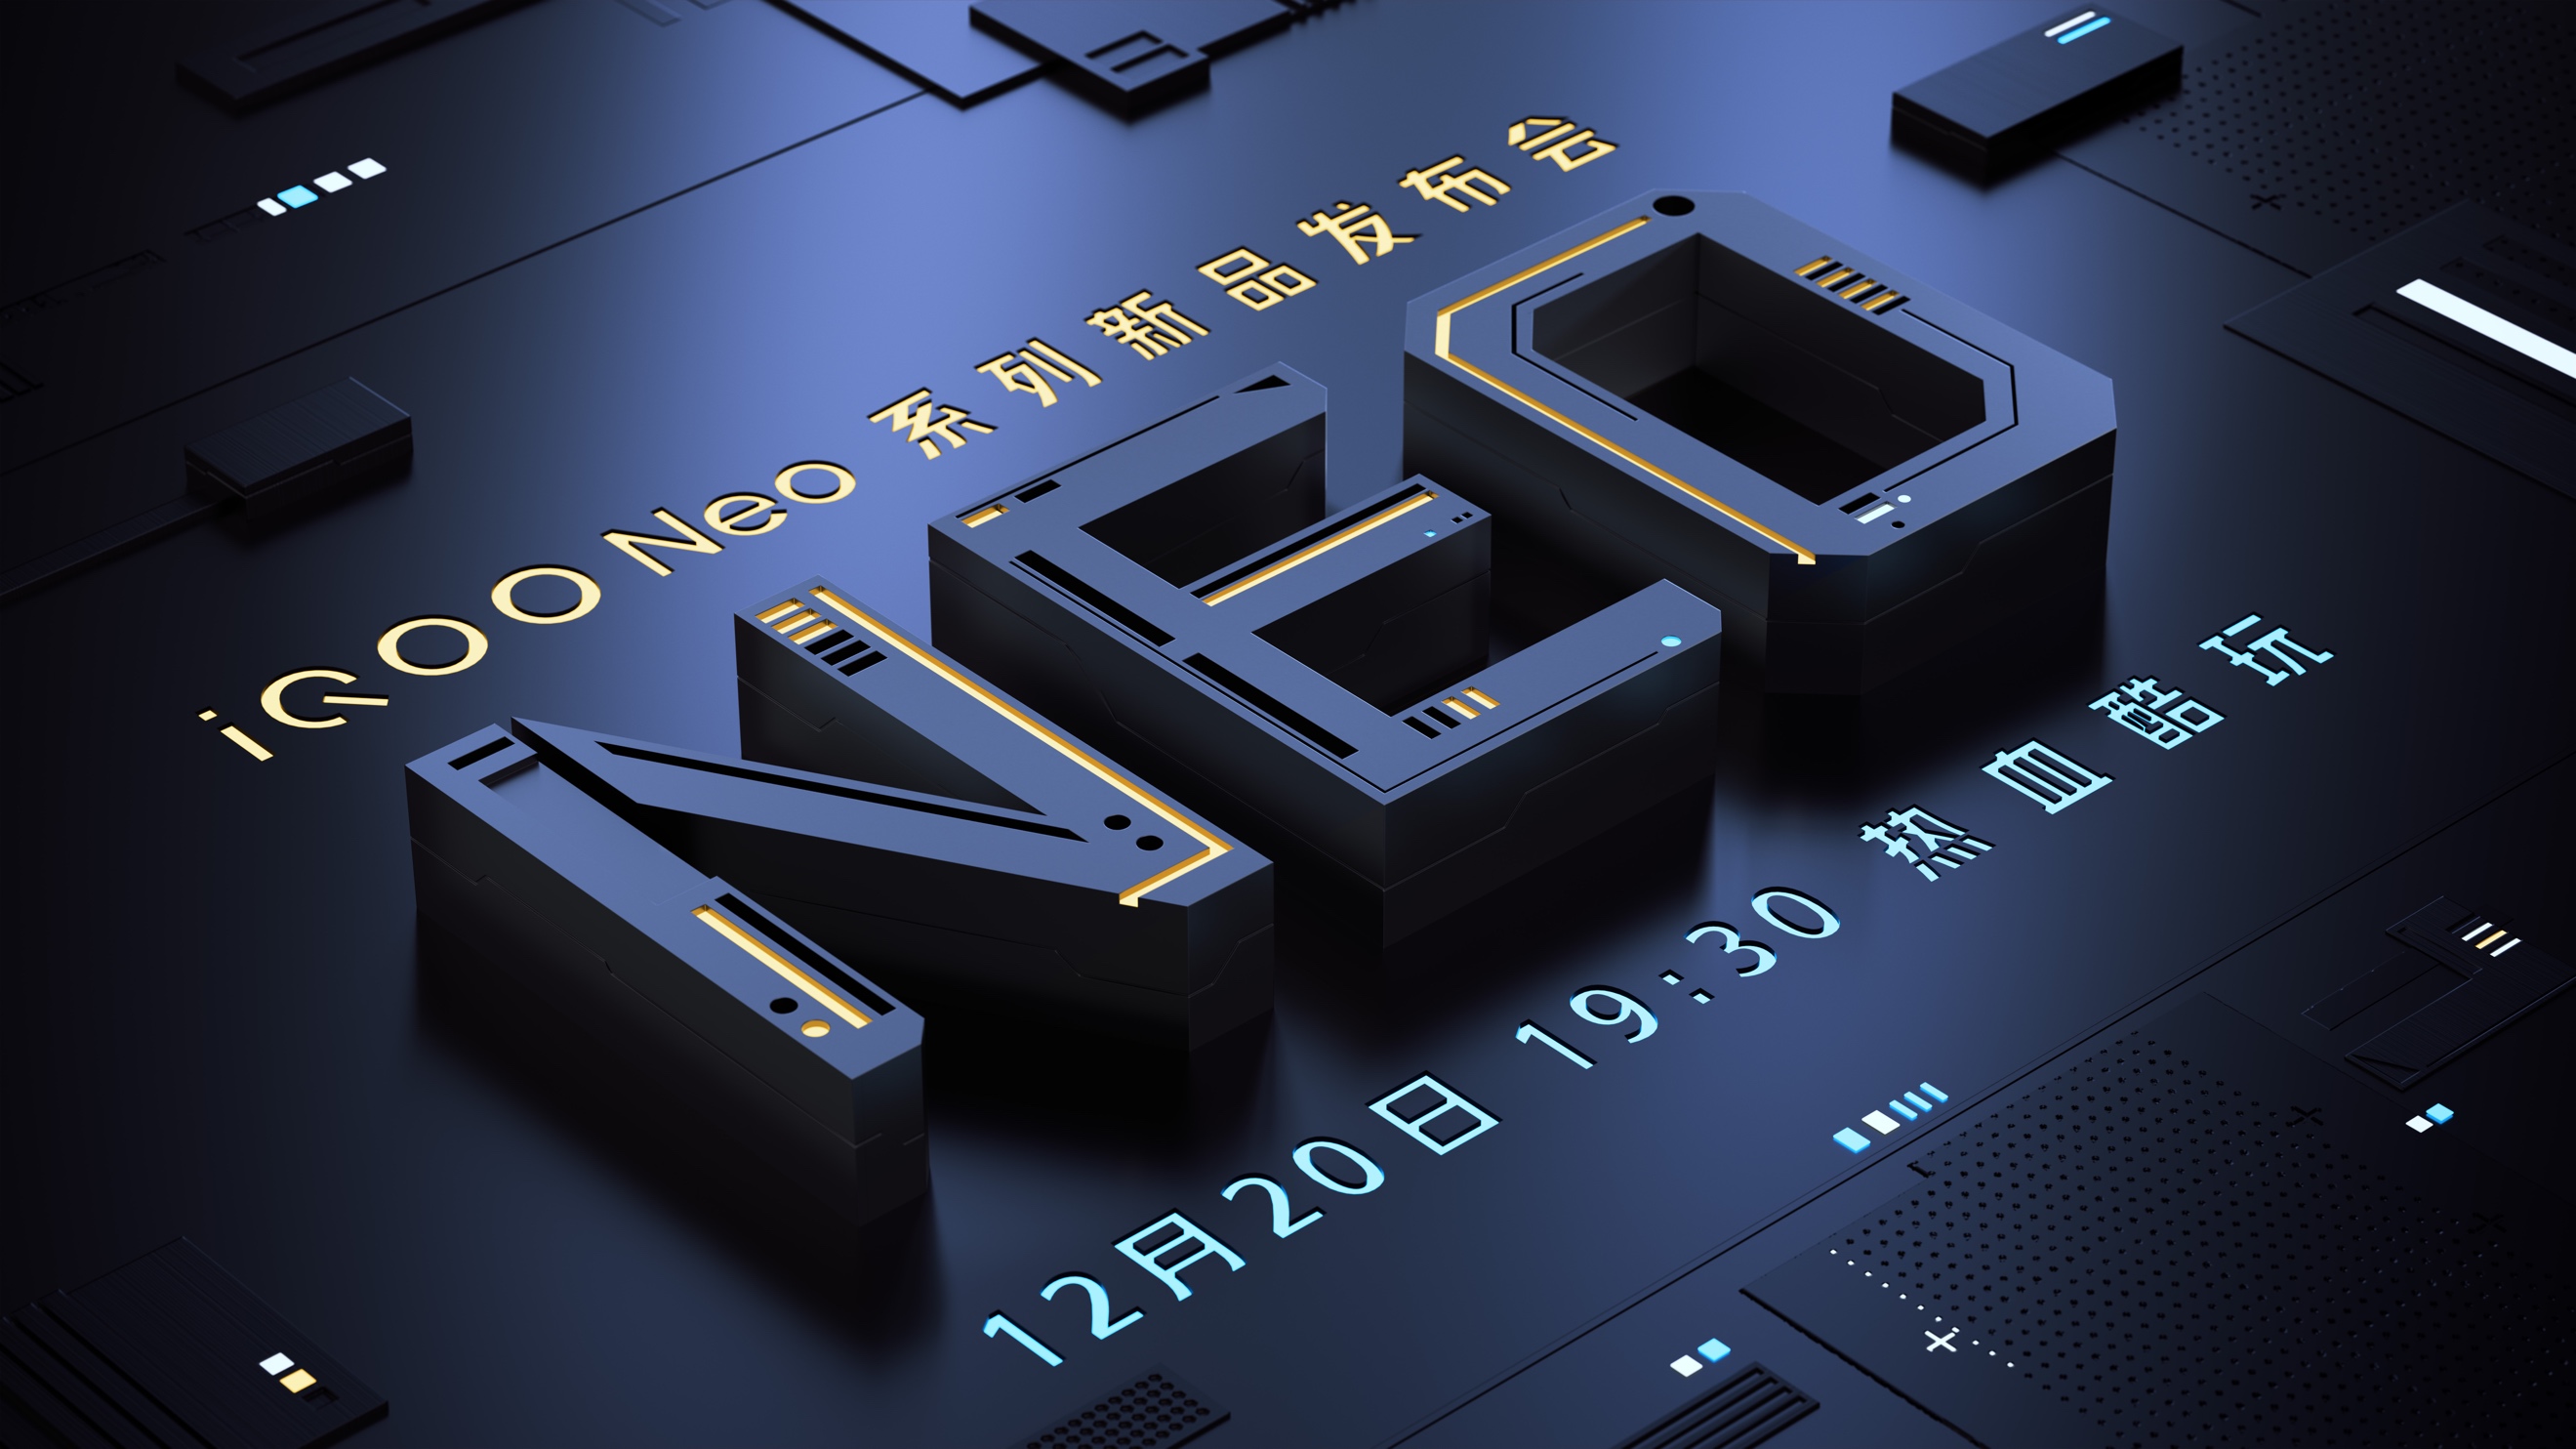 iQOO Neo5S将搭载骁龙888处理器，配合进化之后的独显芯片Pro